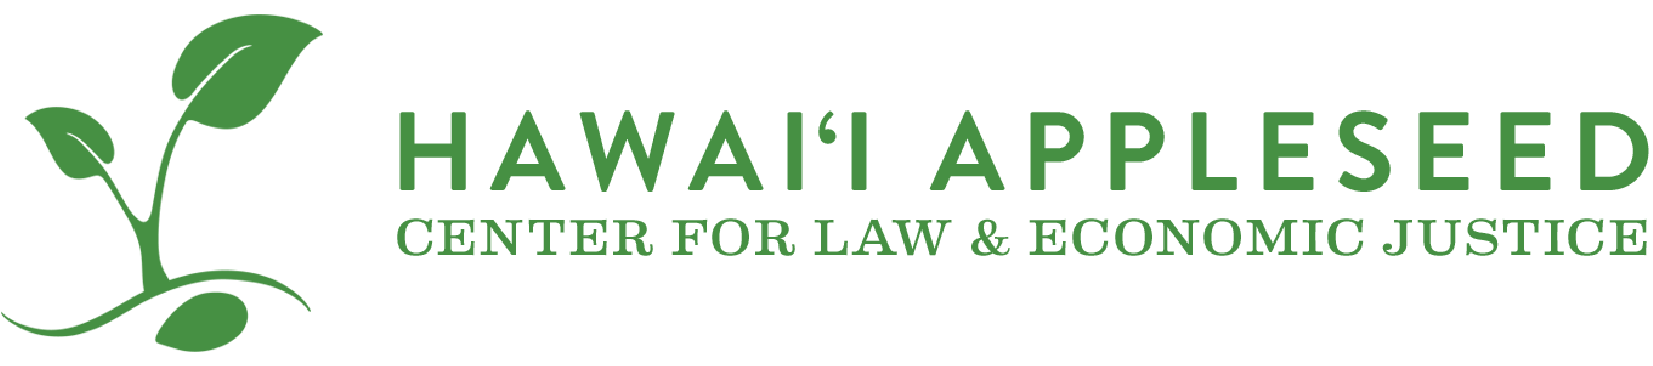 hawaii appleseed logo